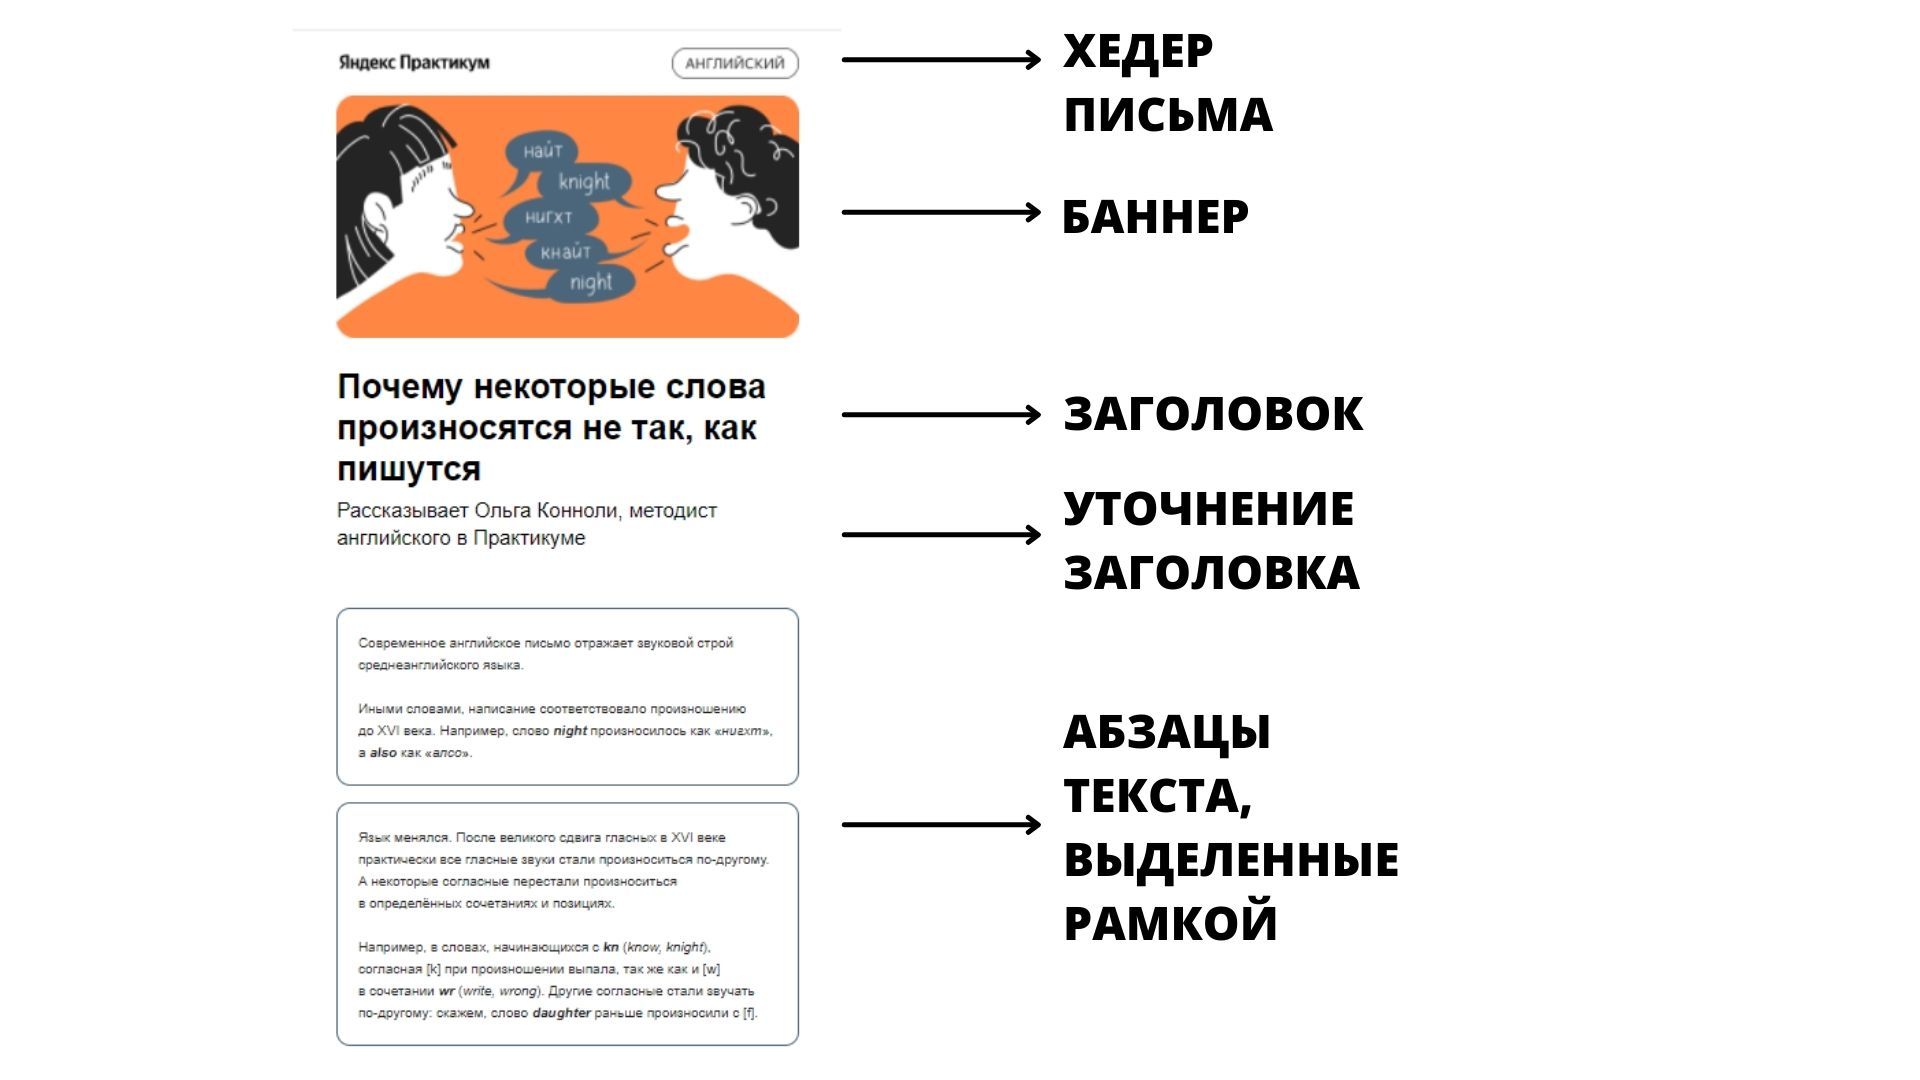 Одностолбцовая система в рассылке Яндекс.Практикума